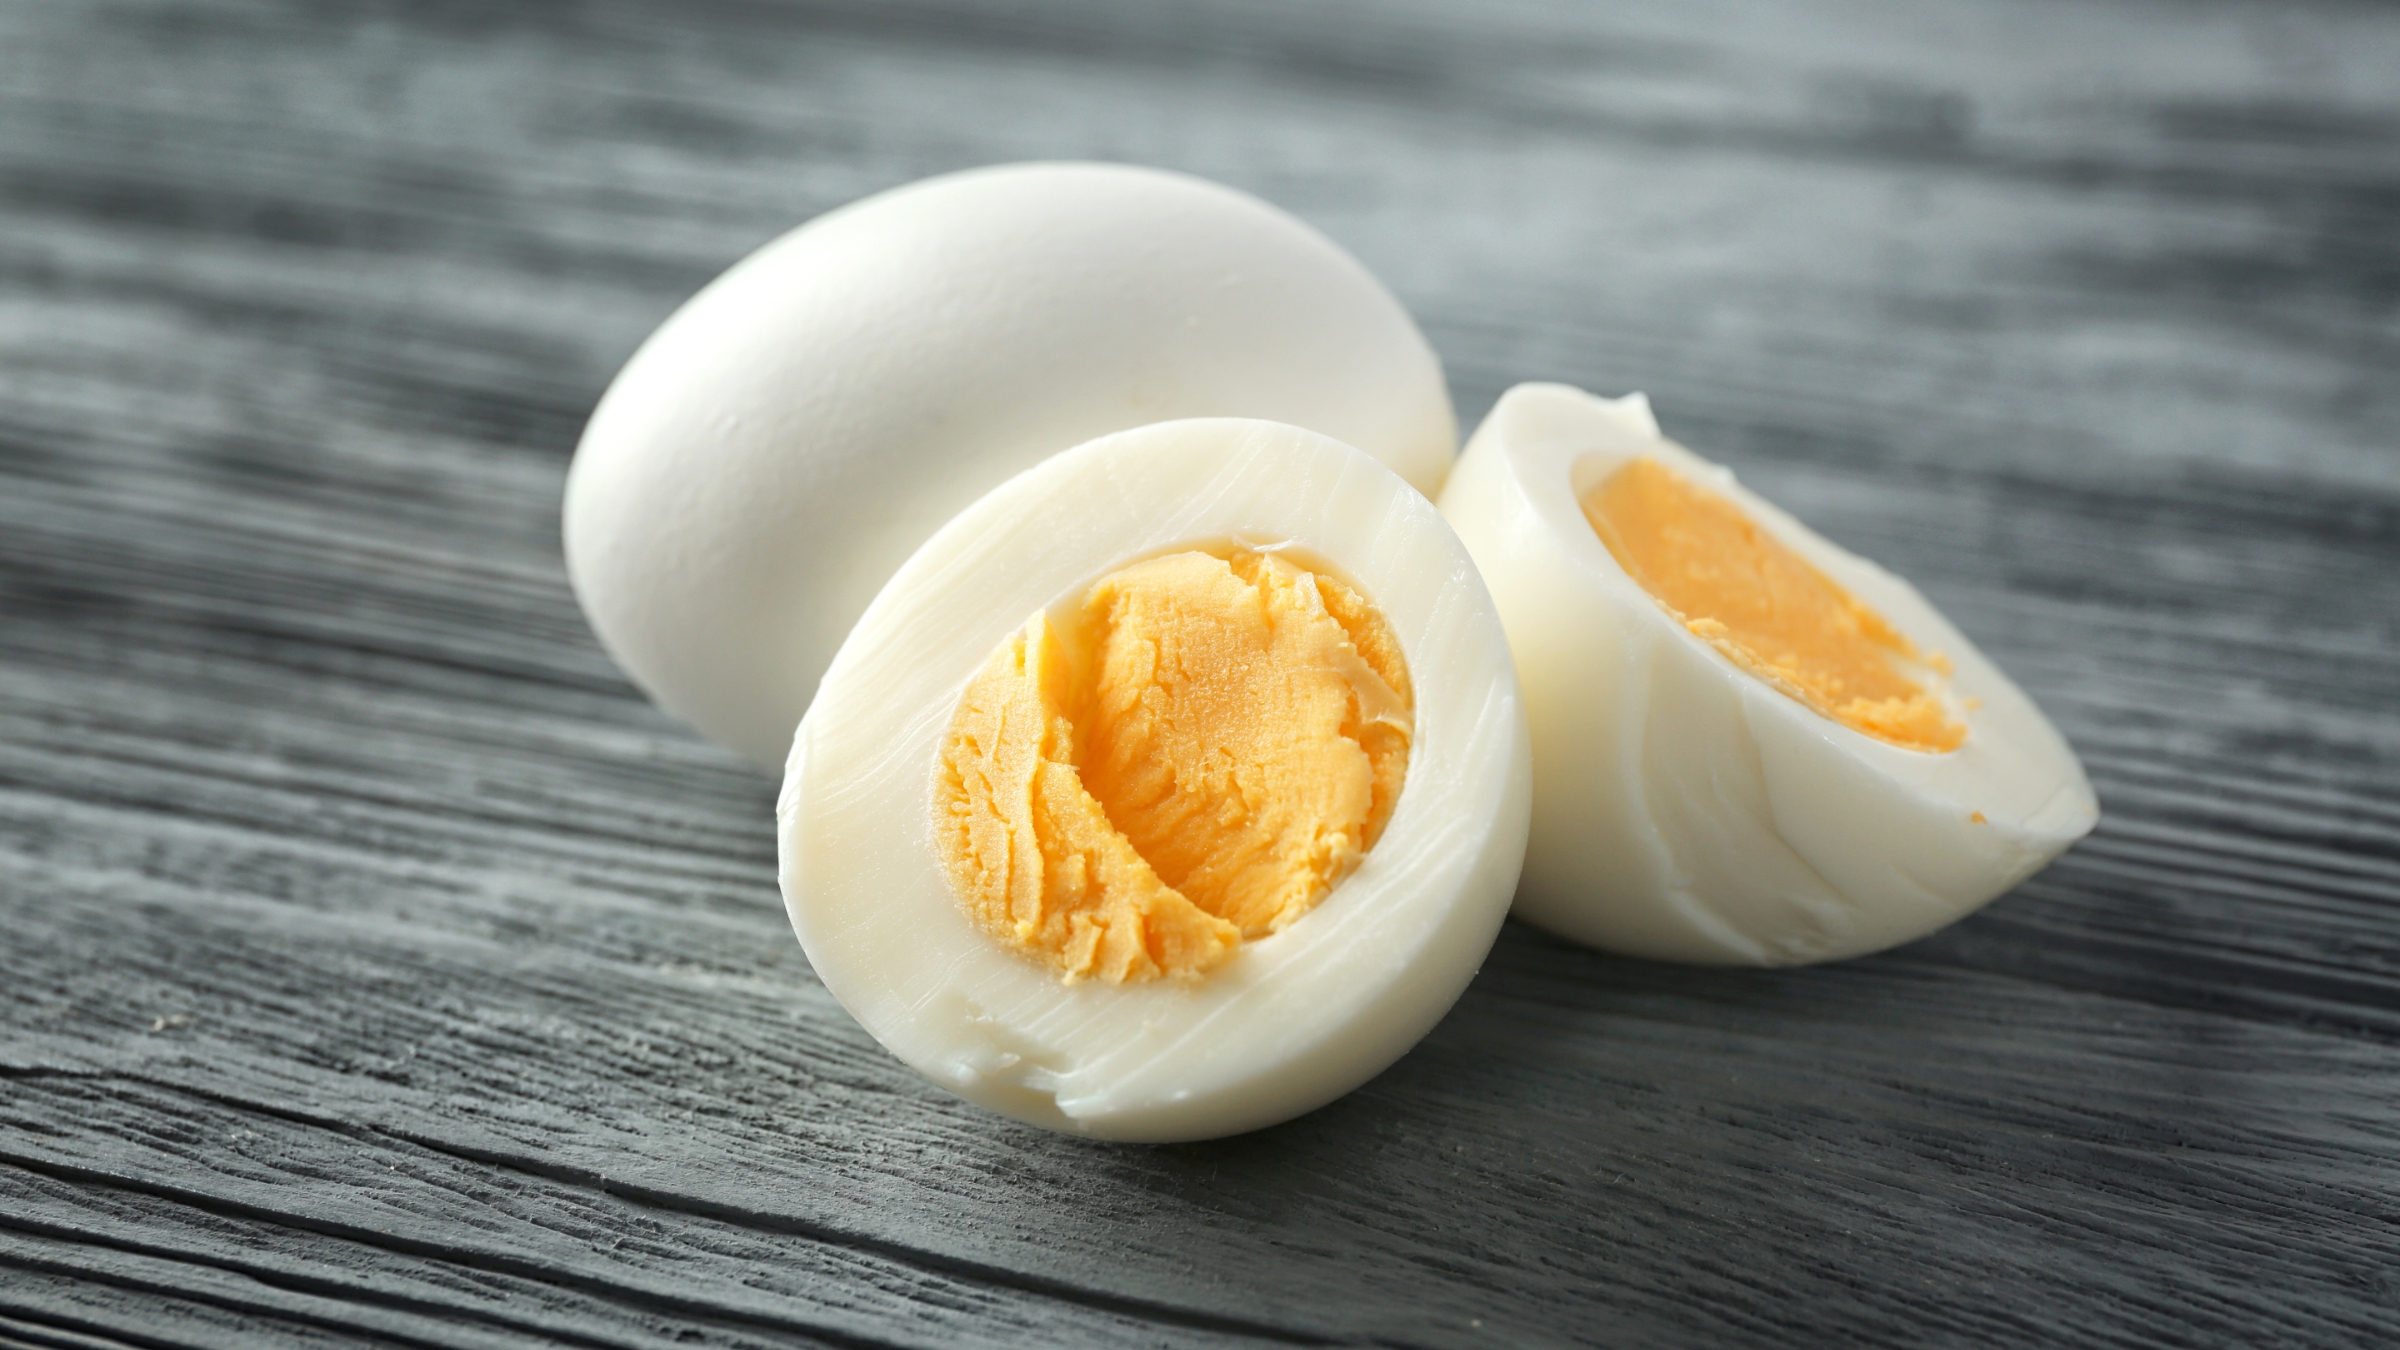 Cuánto tiempo tarda en cocinarse un huevo perfecto?